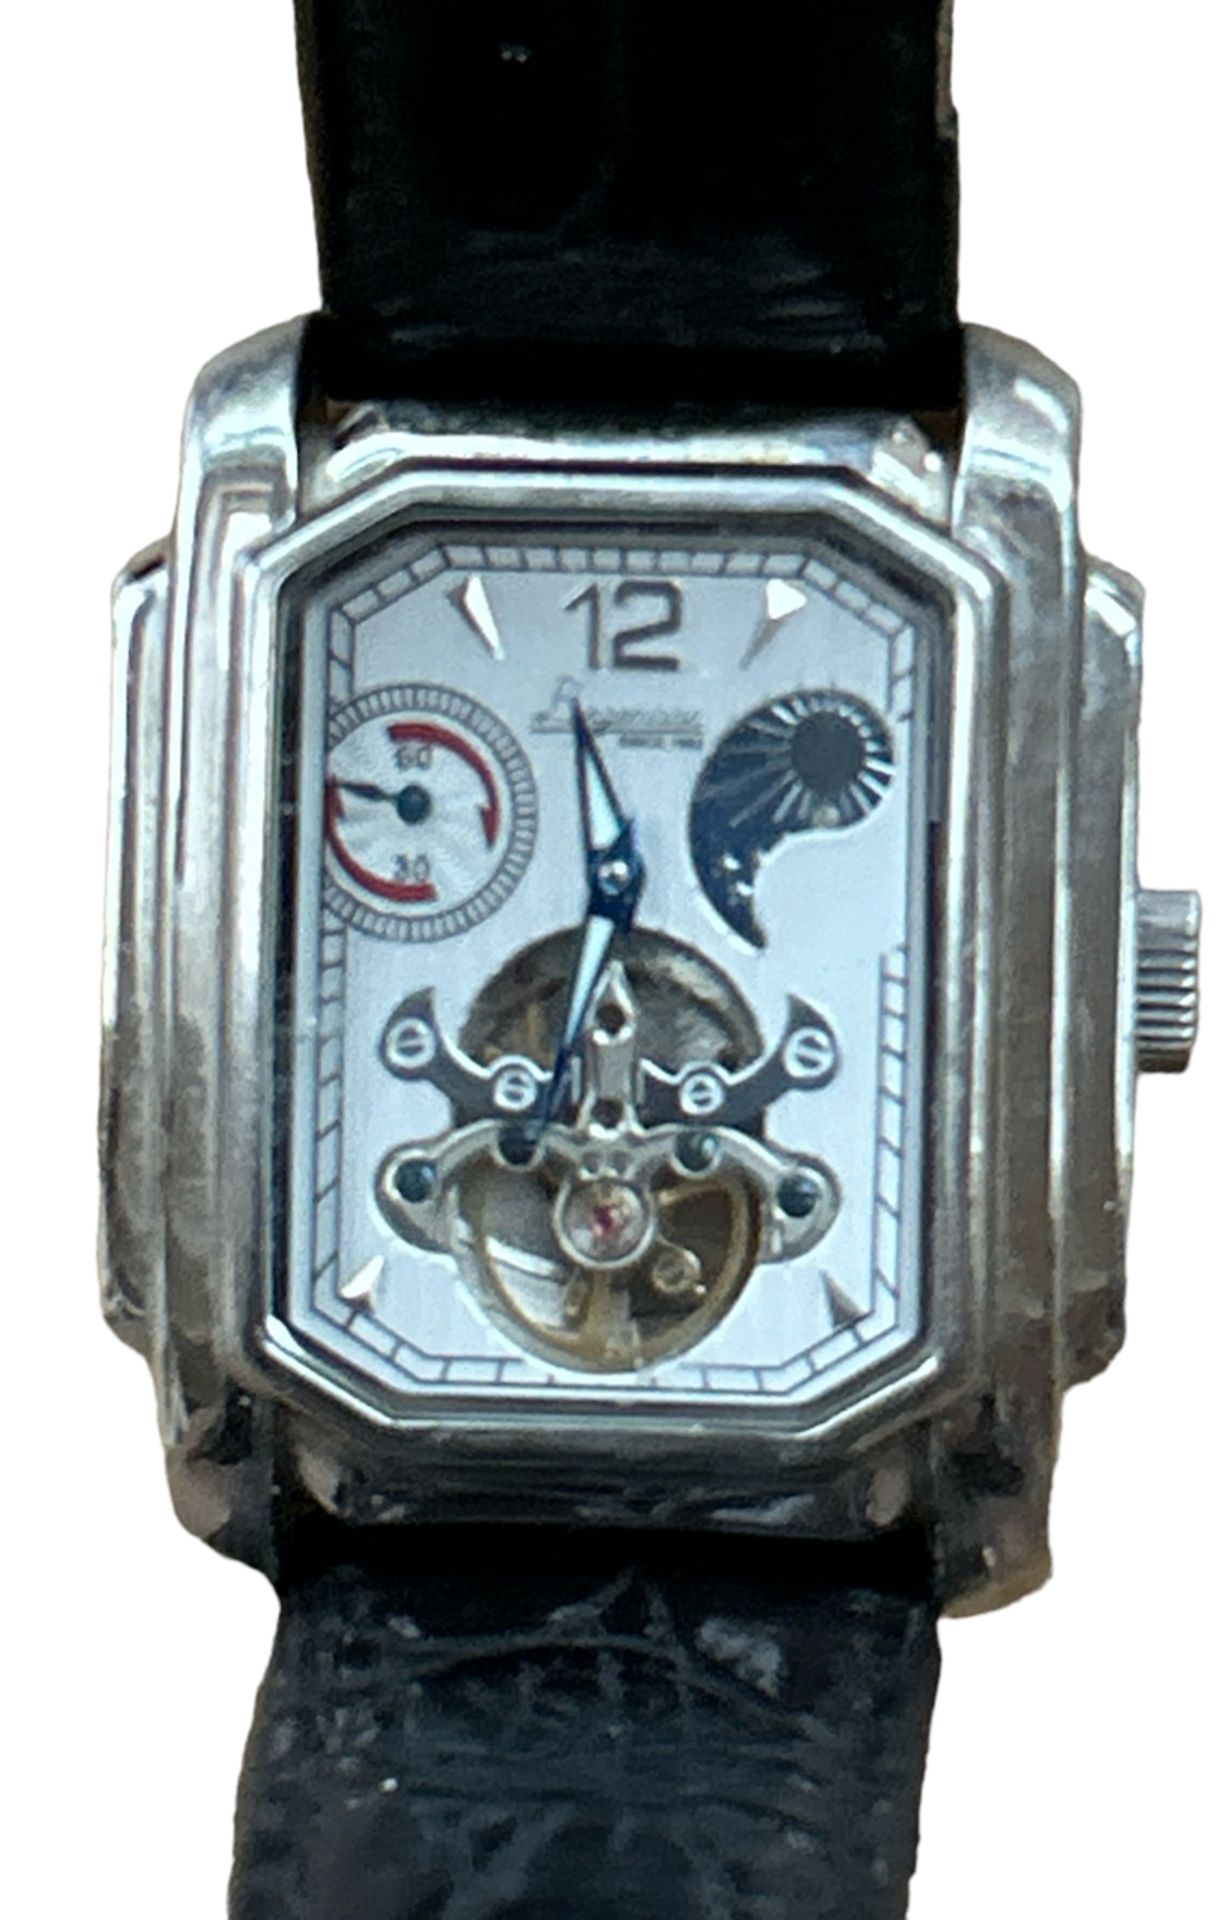 Langemann Automatic Uhr, eckige Form, Lederband, Werk läuft, leichte Tragespuren - Bild 2 aus 3